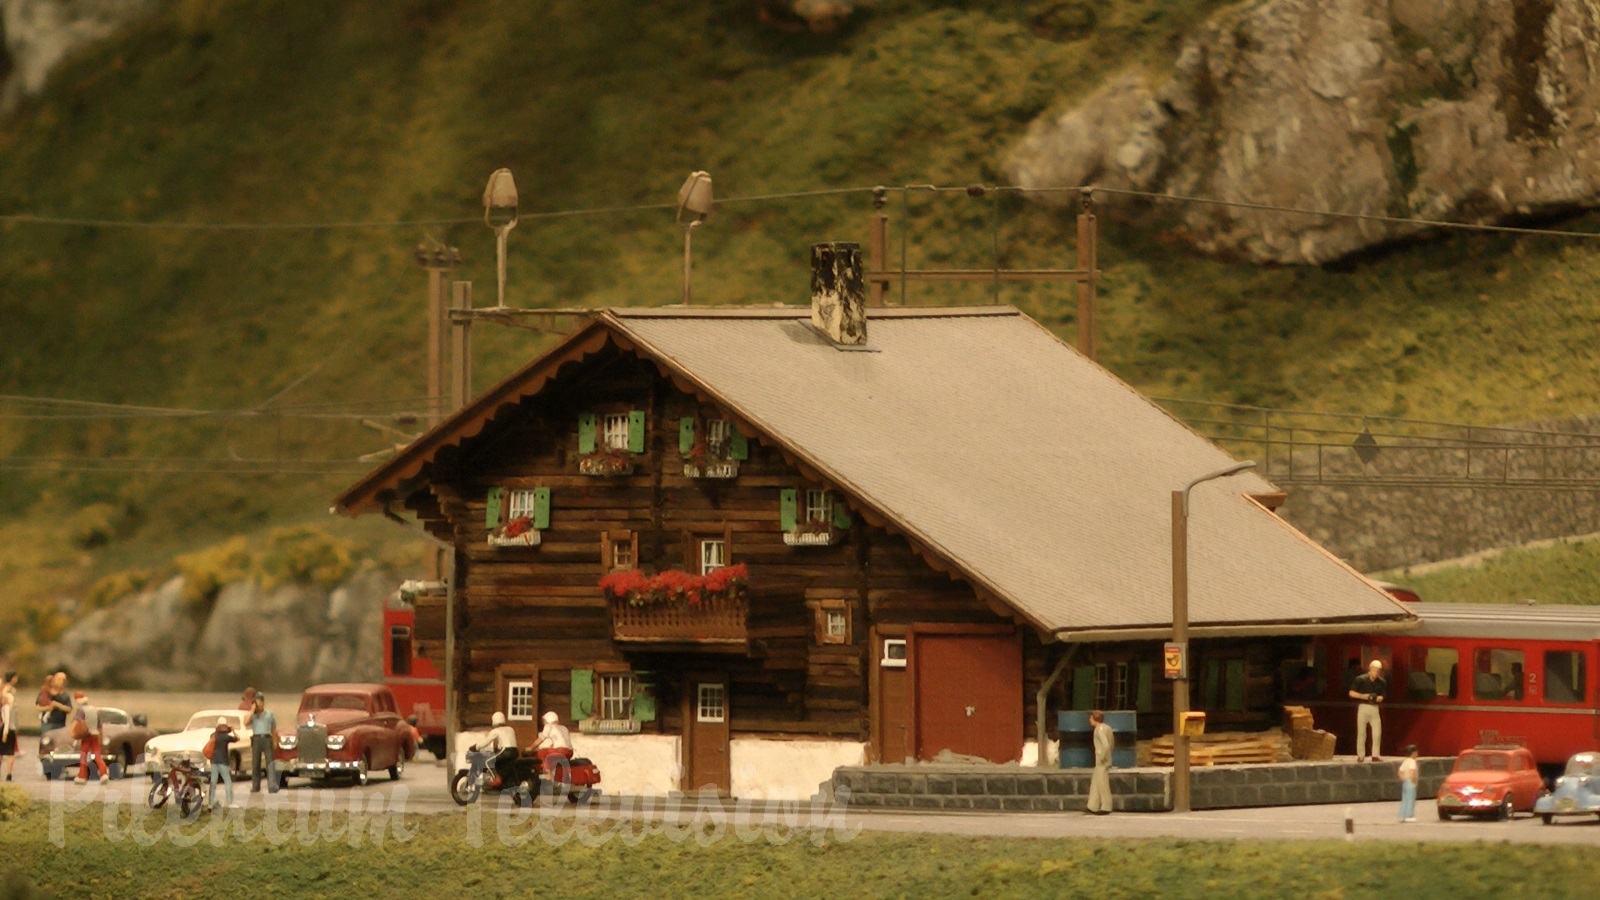 תערוכת רכבות: דגם מיניאטורי של שוויץ